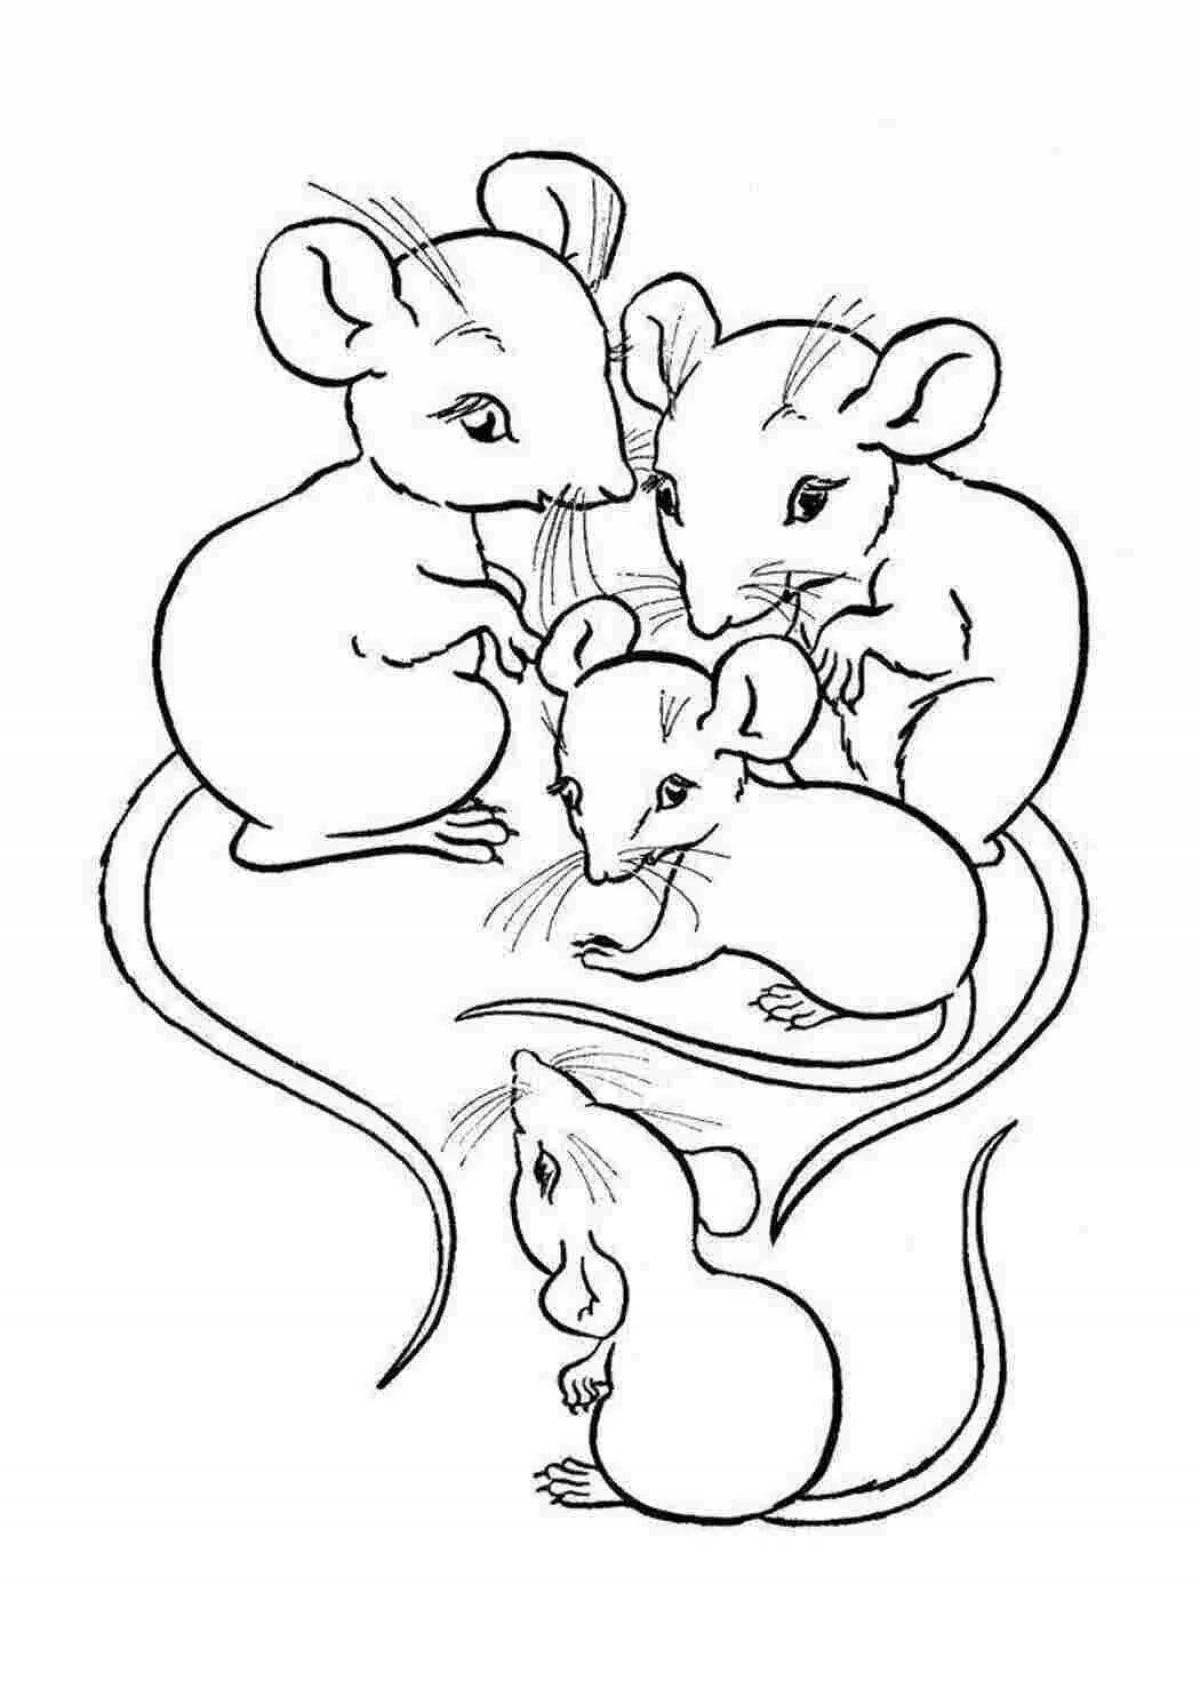 Милая мышка-раскраска для детей